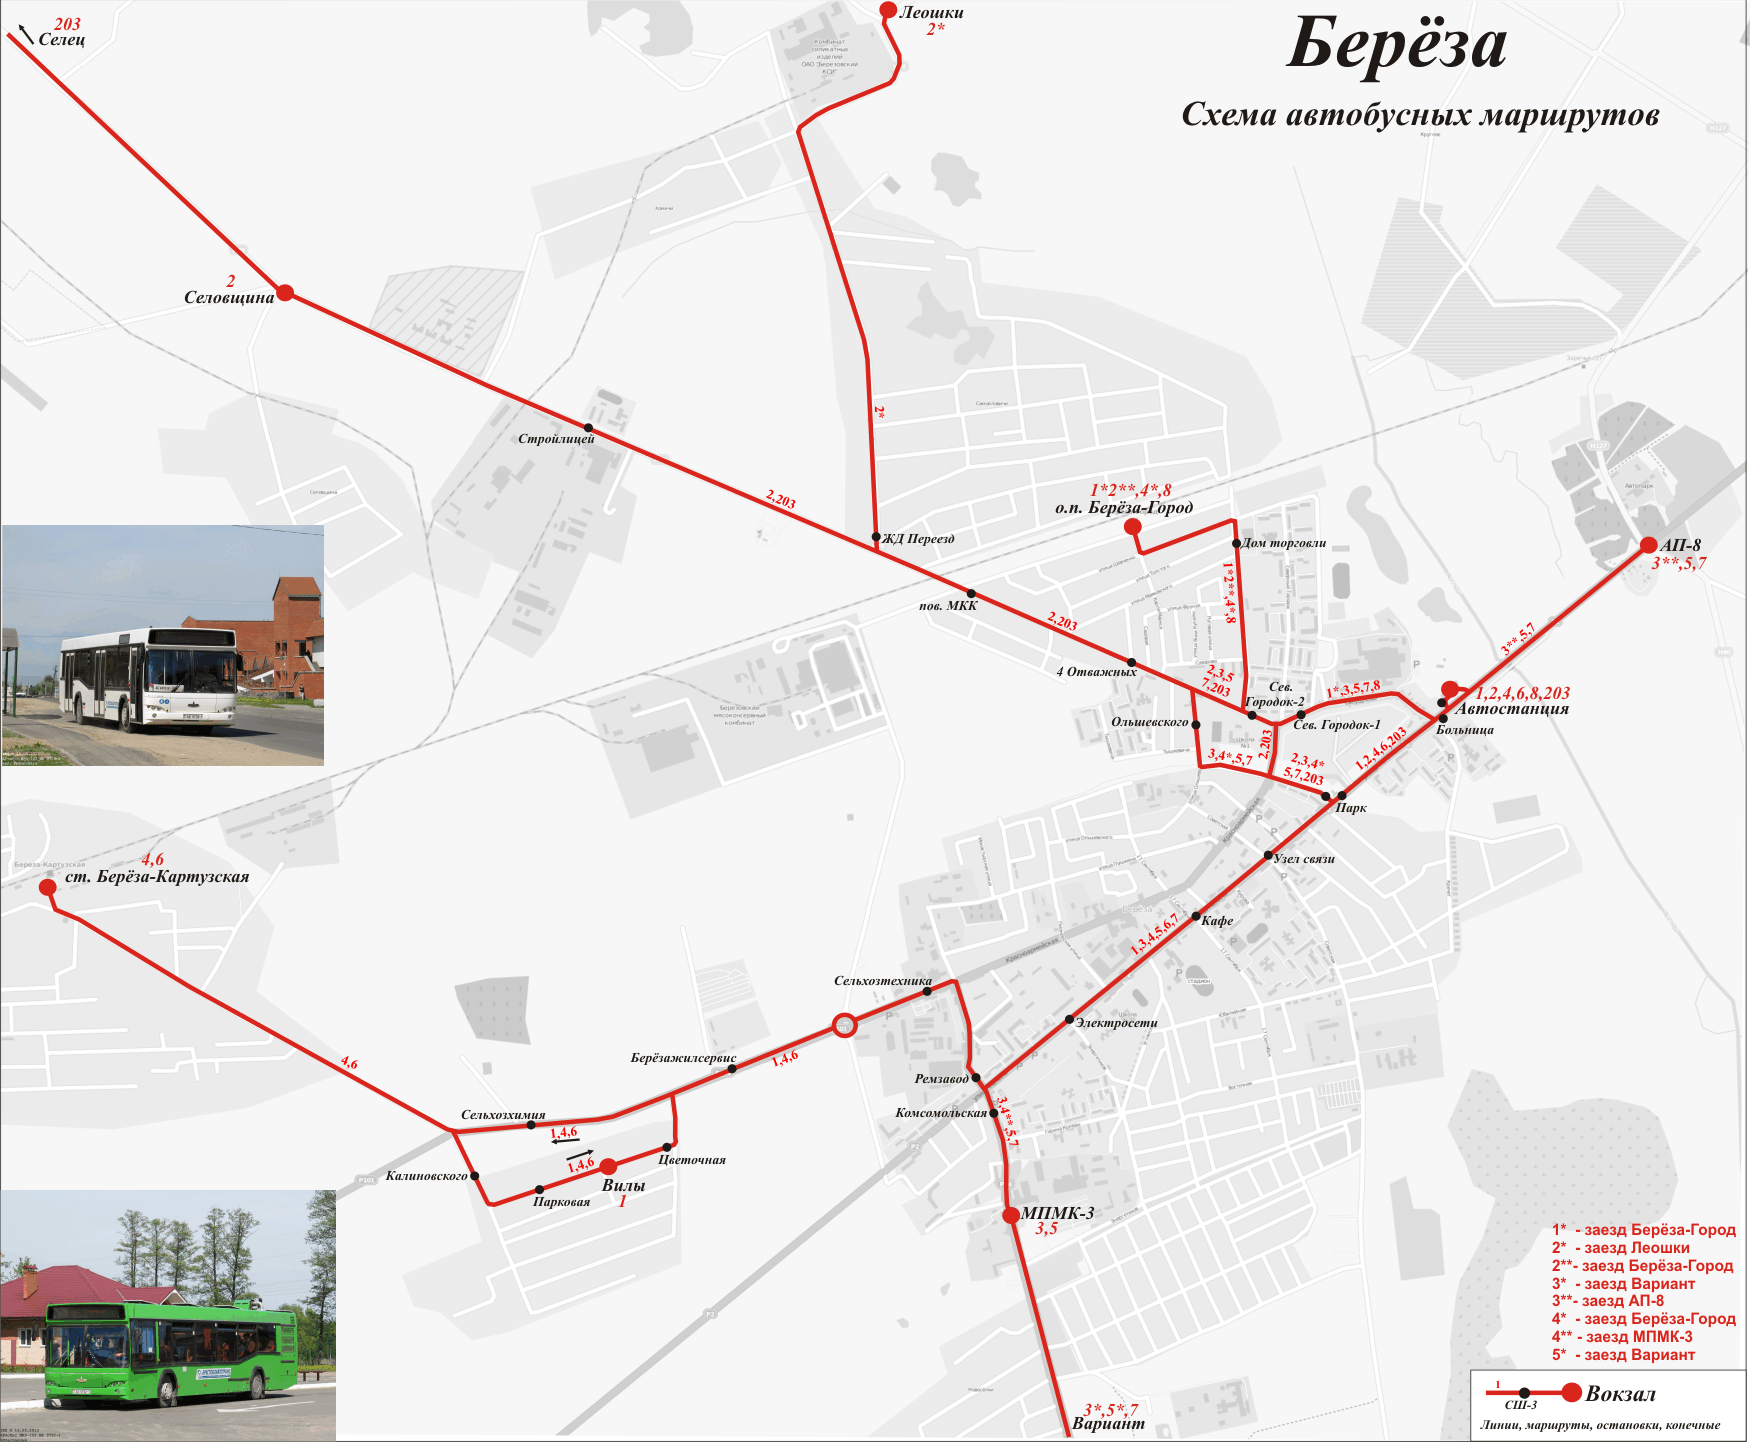 Bereza — Maps; Maps routes